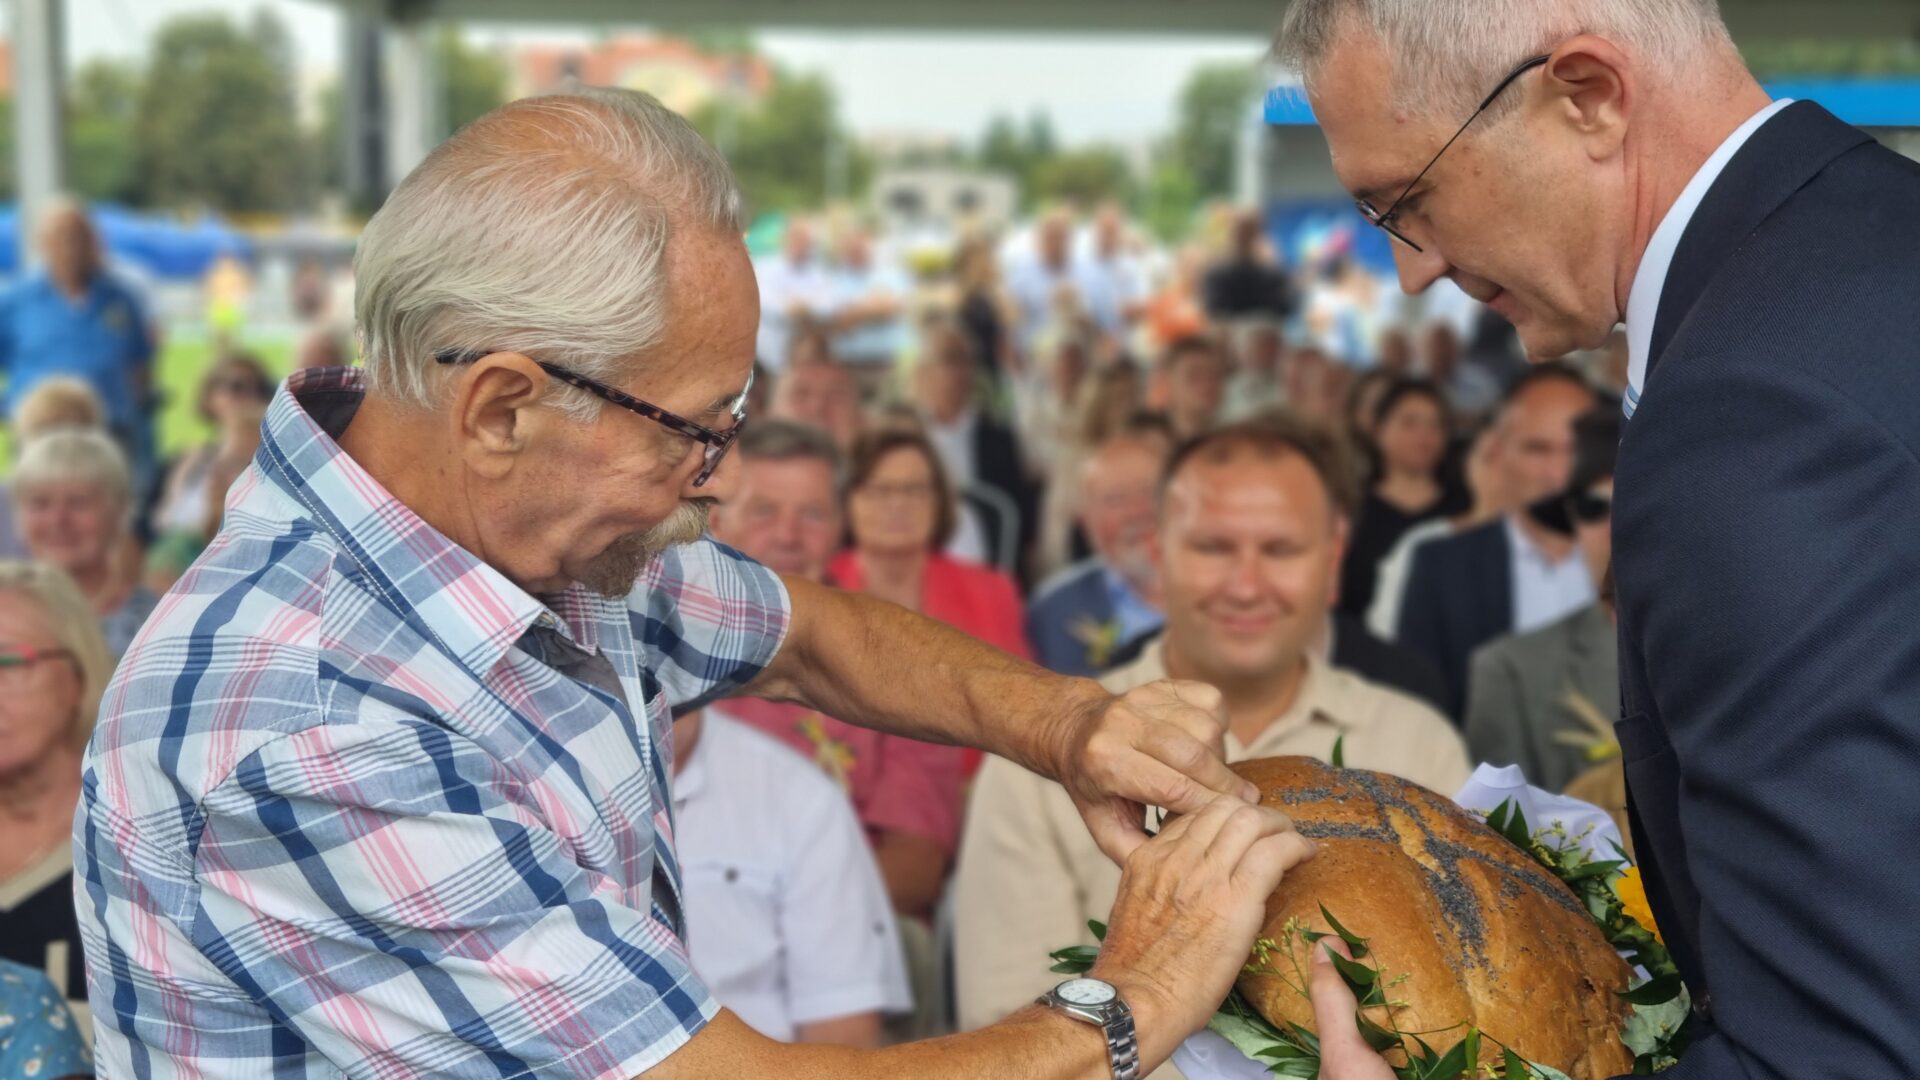 Dzielenie chleba przez Burmistrza MiG Pleszew podczas Wojewódzko-Diecezjalnych Dożynek Wielkopolskich w Pleszewie.